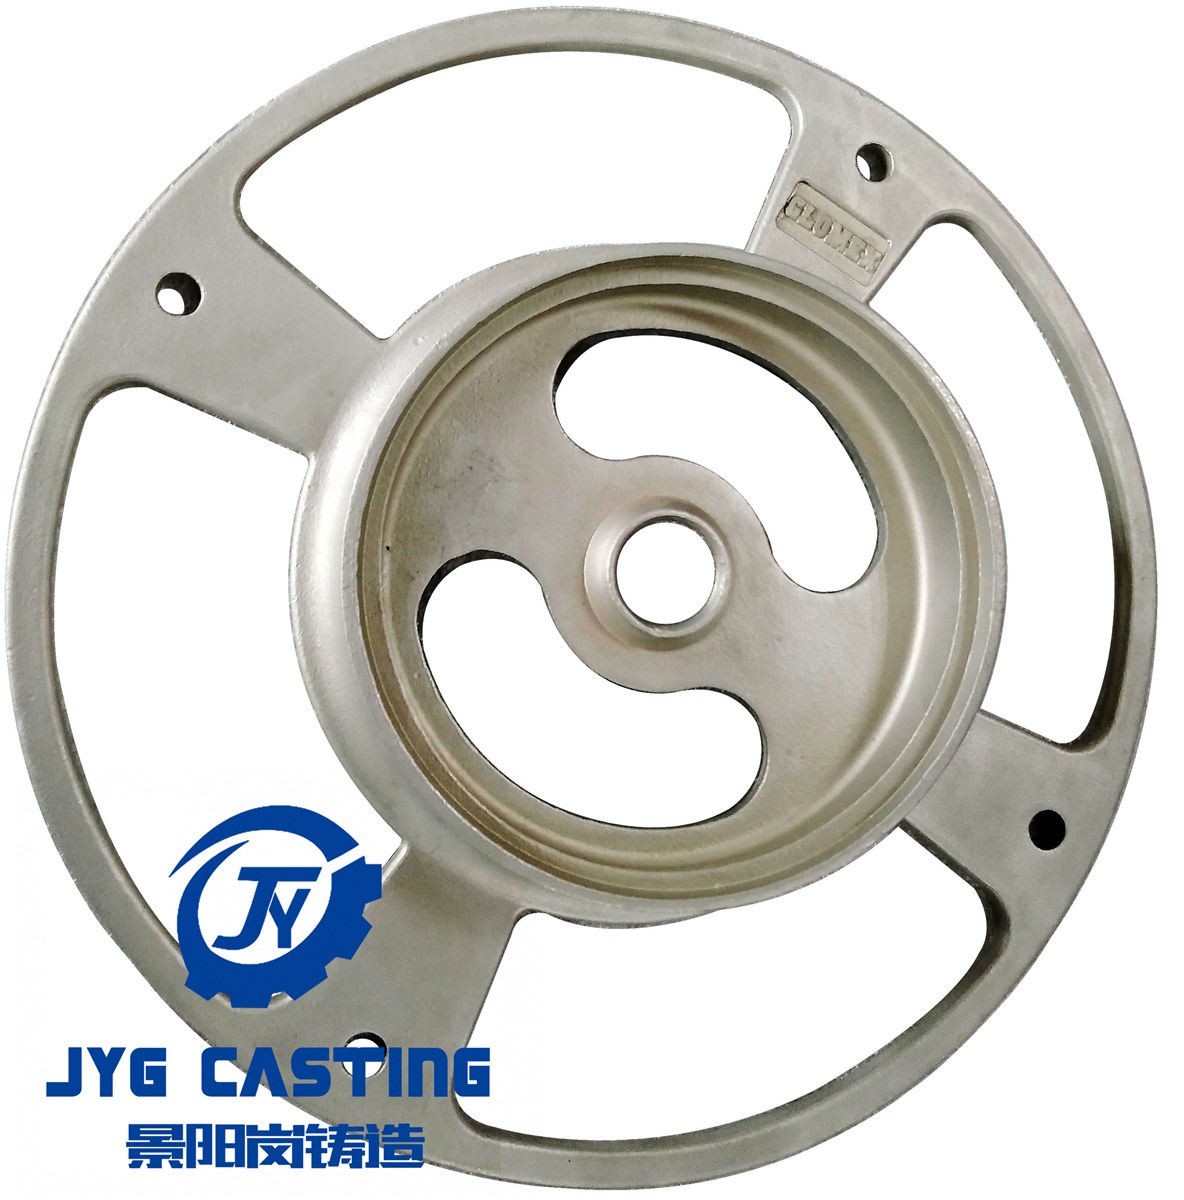 JYG Casting Customizes Qualtiy Precision Casting Machinery Parts